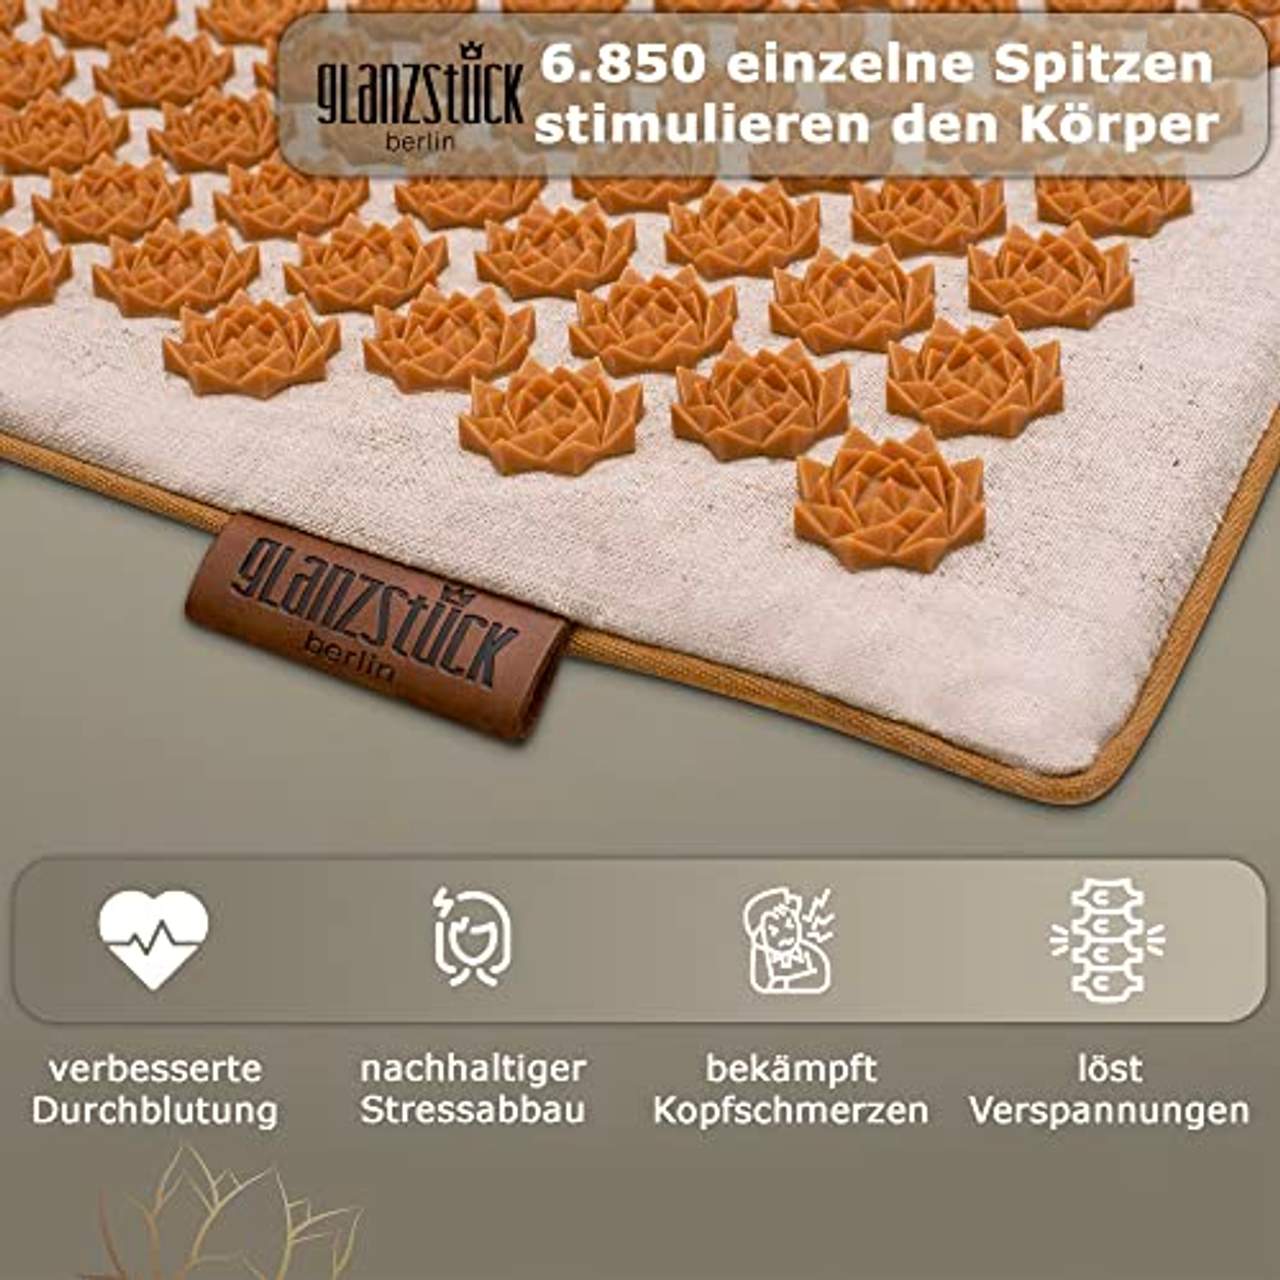 Glanzstück Berlin Health Collection: XL Akupressurmatte Set Premium aus Leinen